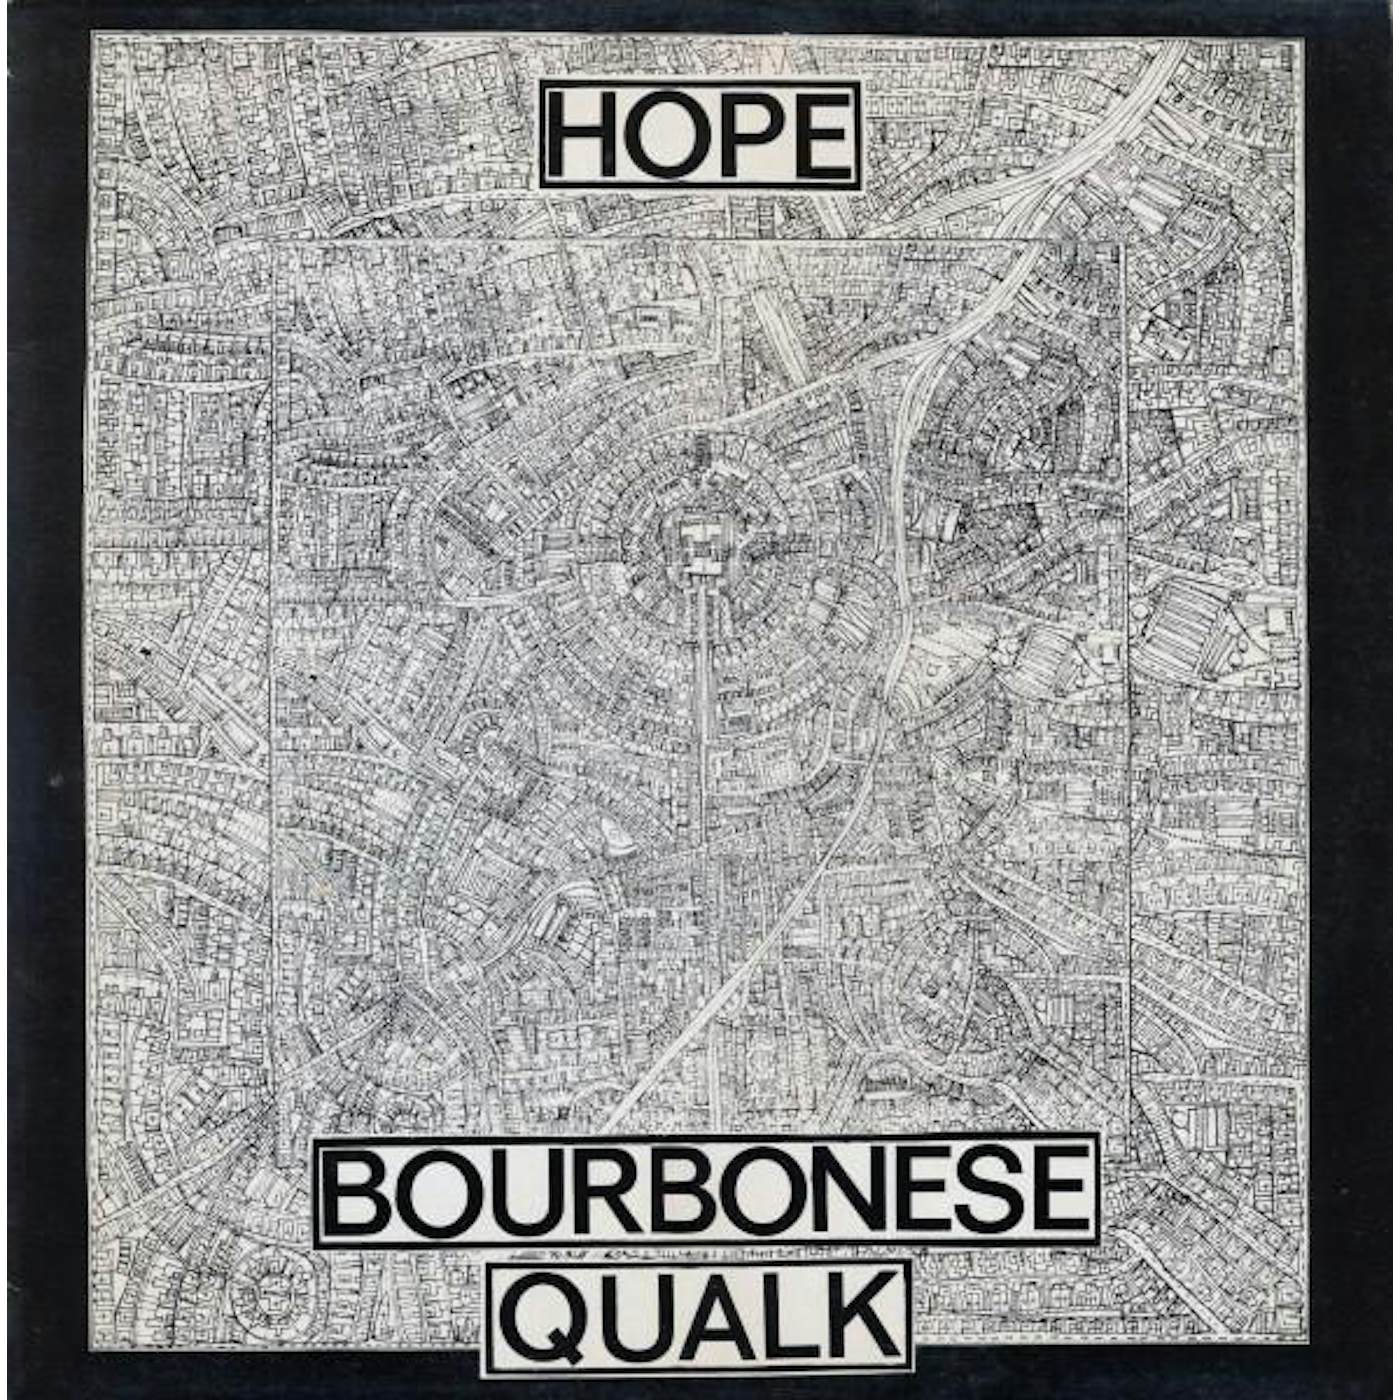 BOURBONESE QUALK Vinyl Record